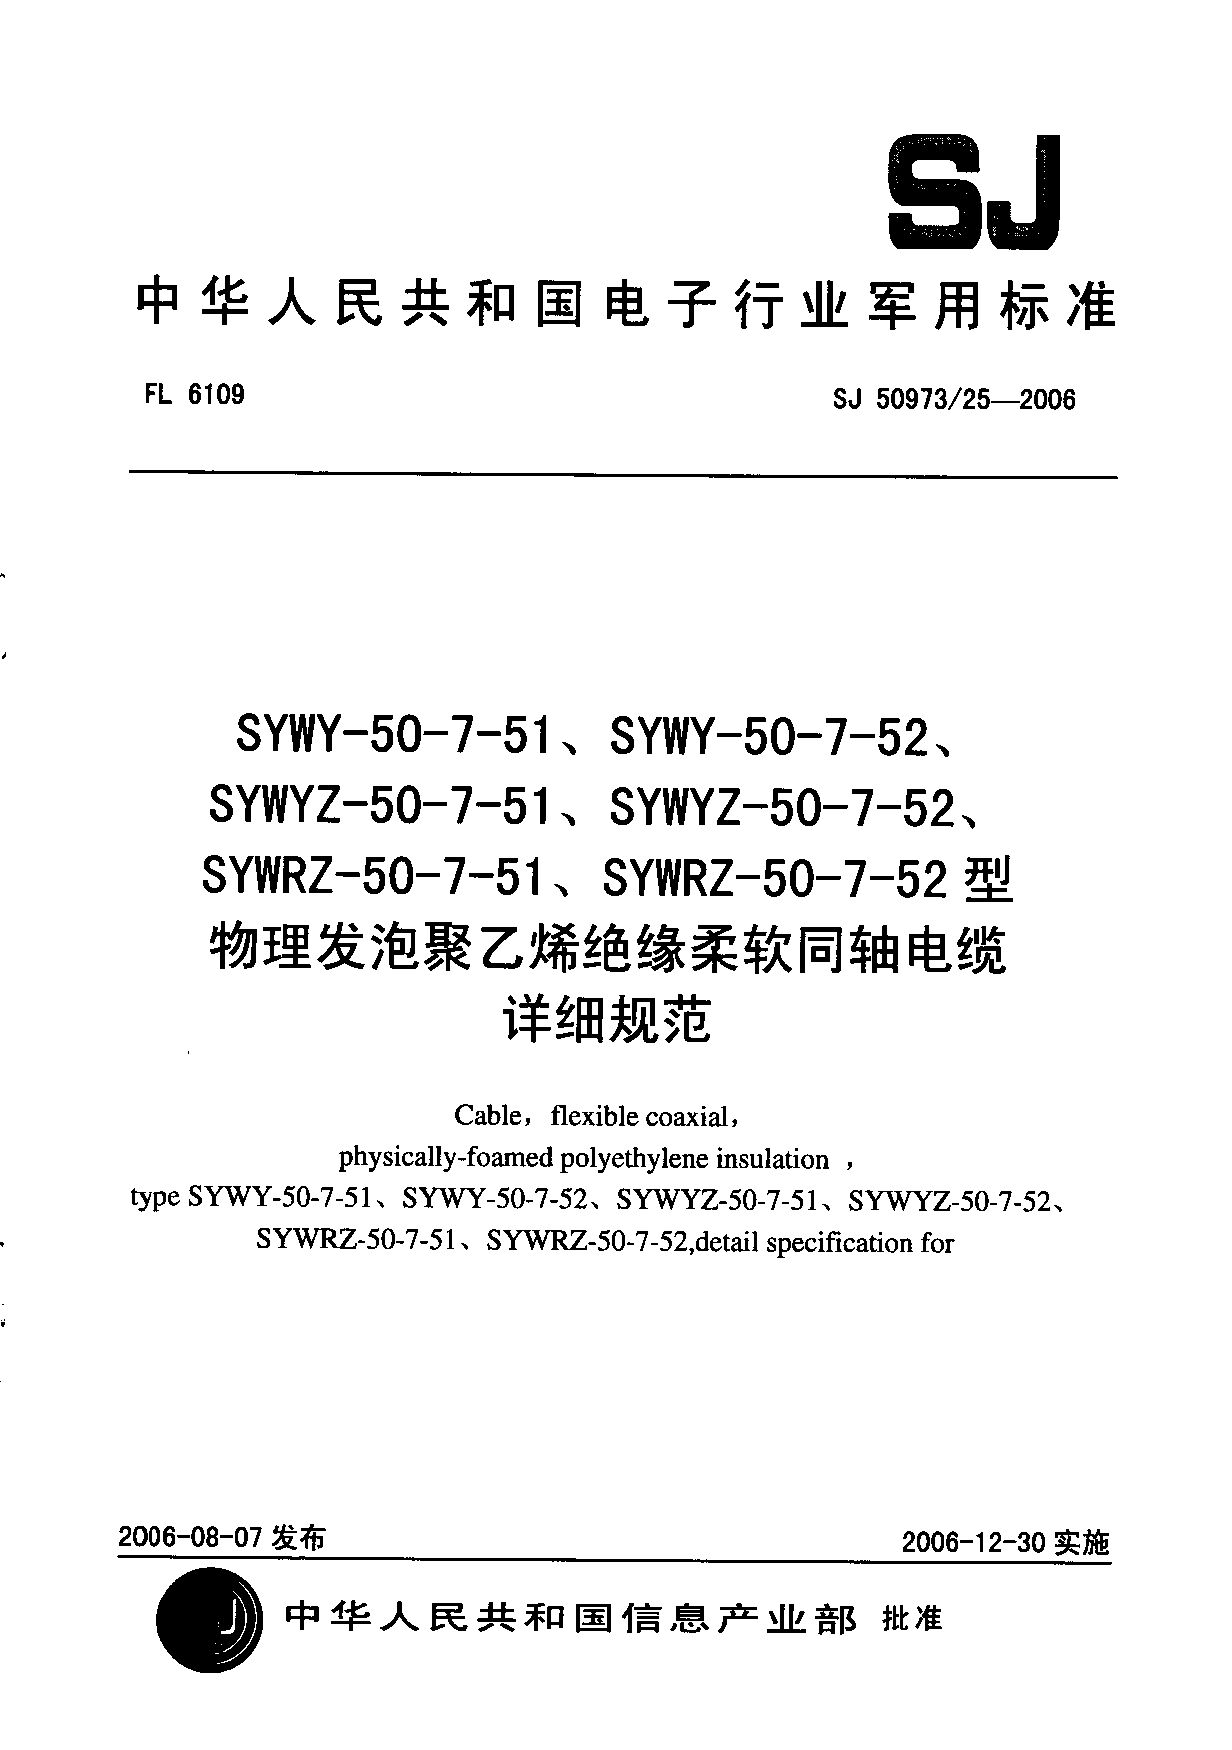 SJ 50973/25-2006封面图